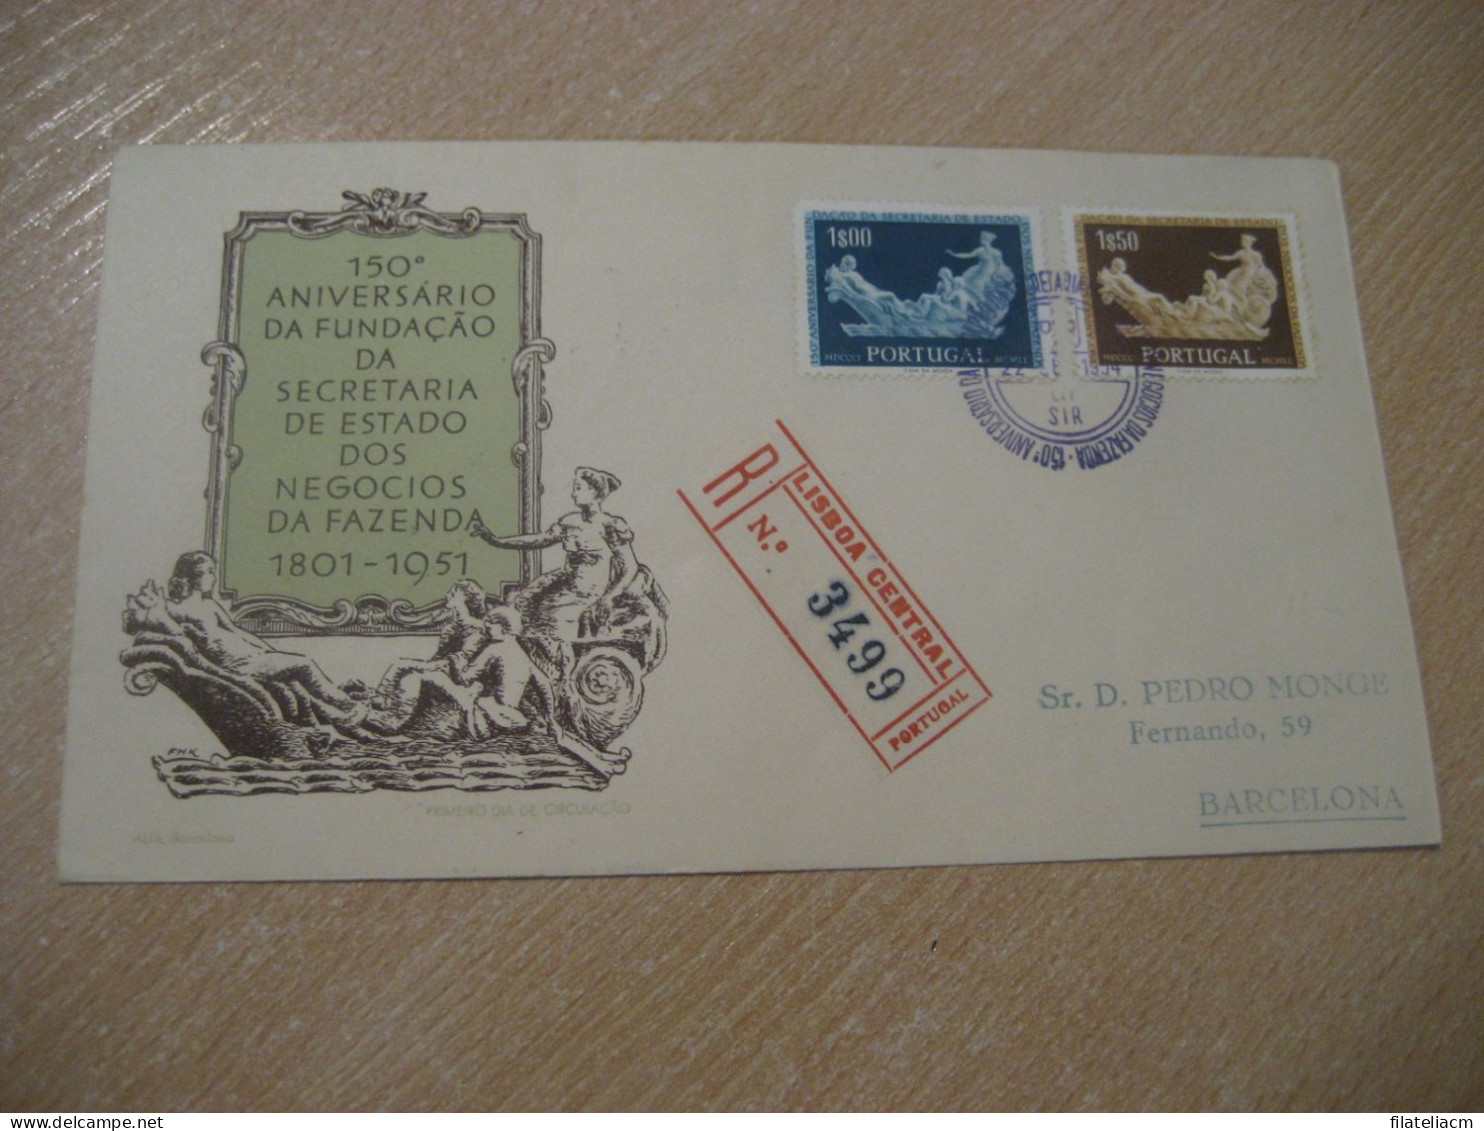 LISBOA 1954 To Barcelona Spain Secretaria De Estado Dos Negocios Registered FDC Cancel Cover PORTUGAL - Covers & Documents